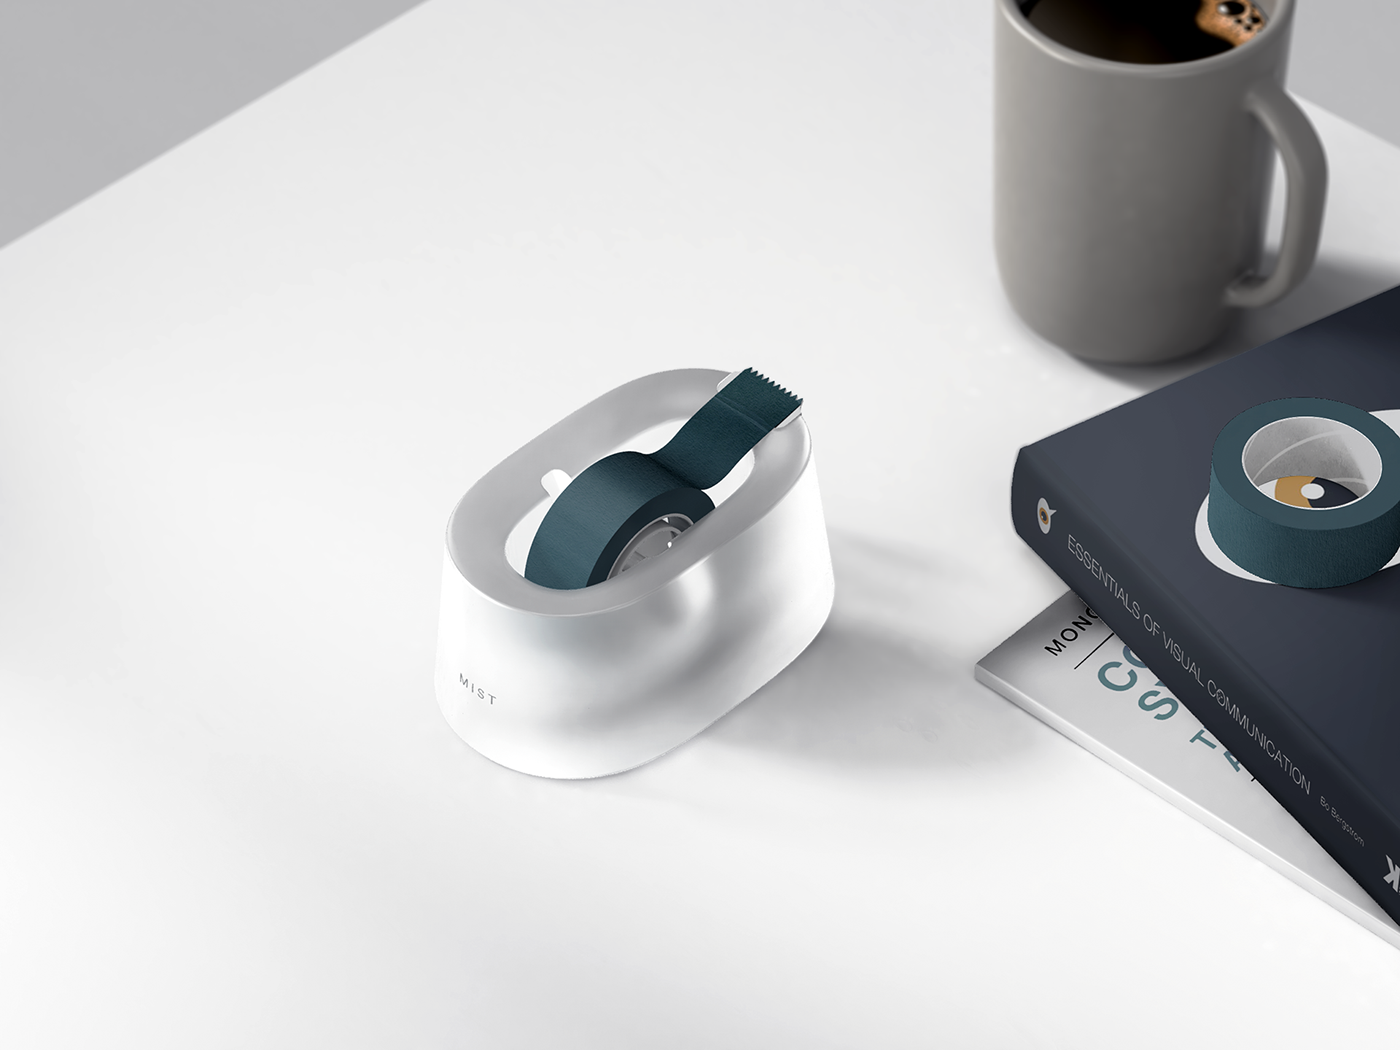 designchallenge Gadget industrialdesign minimal object productdesign Render Stationery tape dispenser translucent